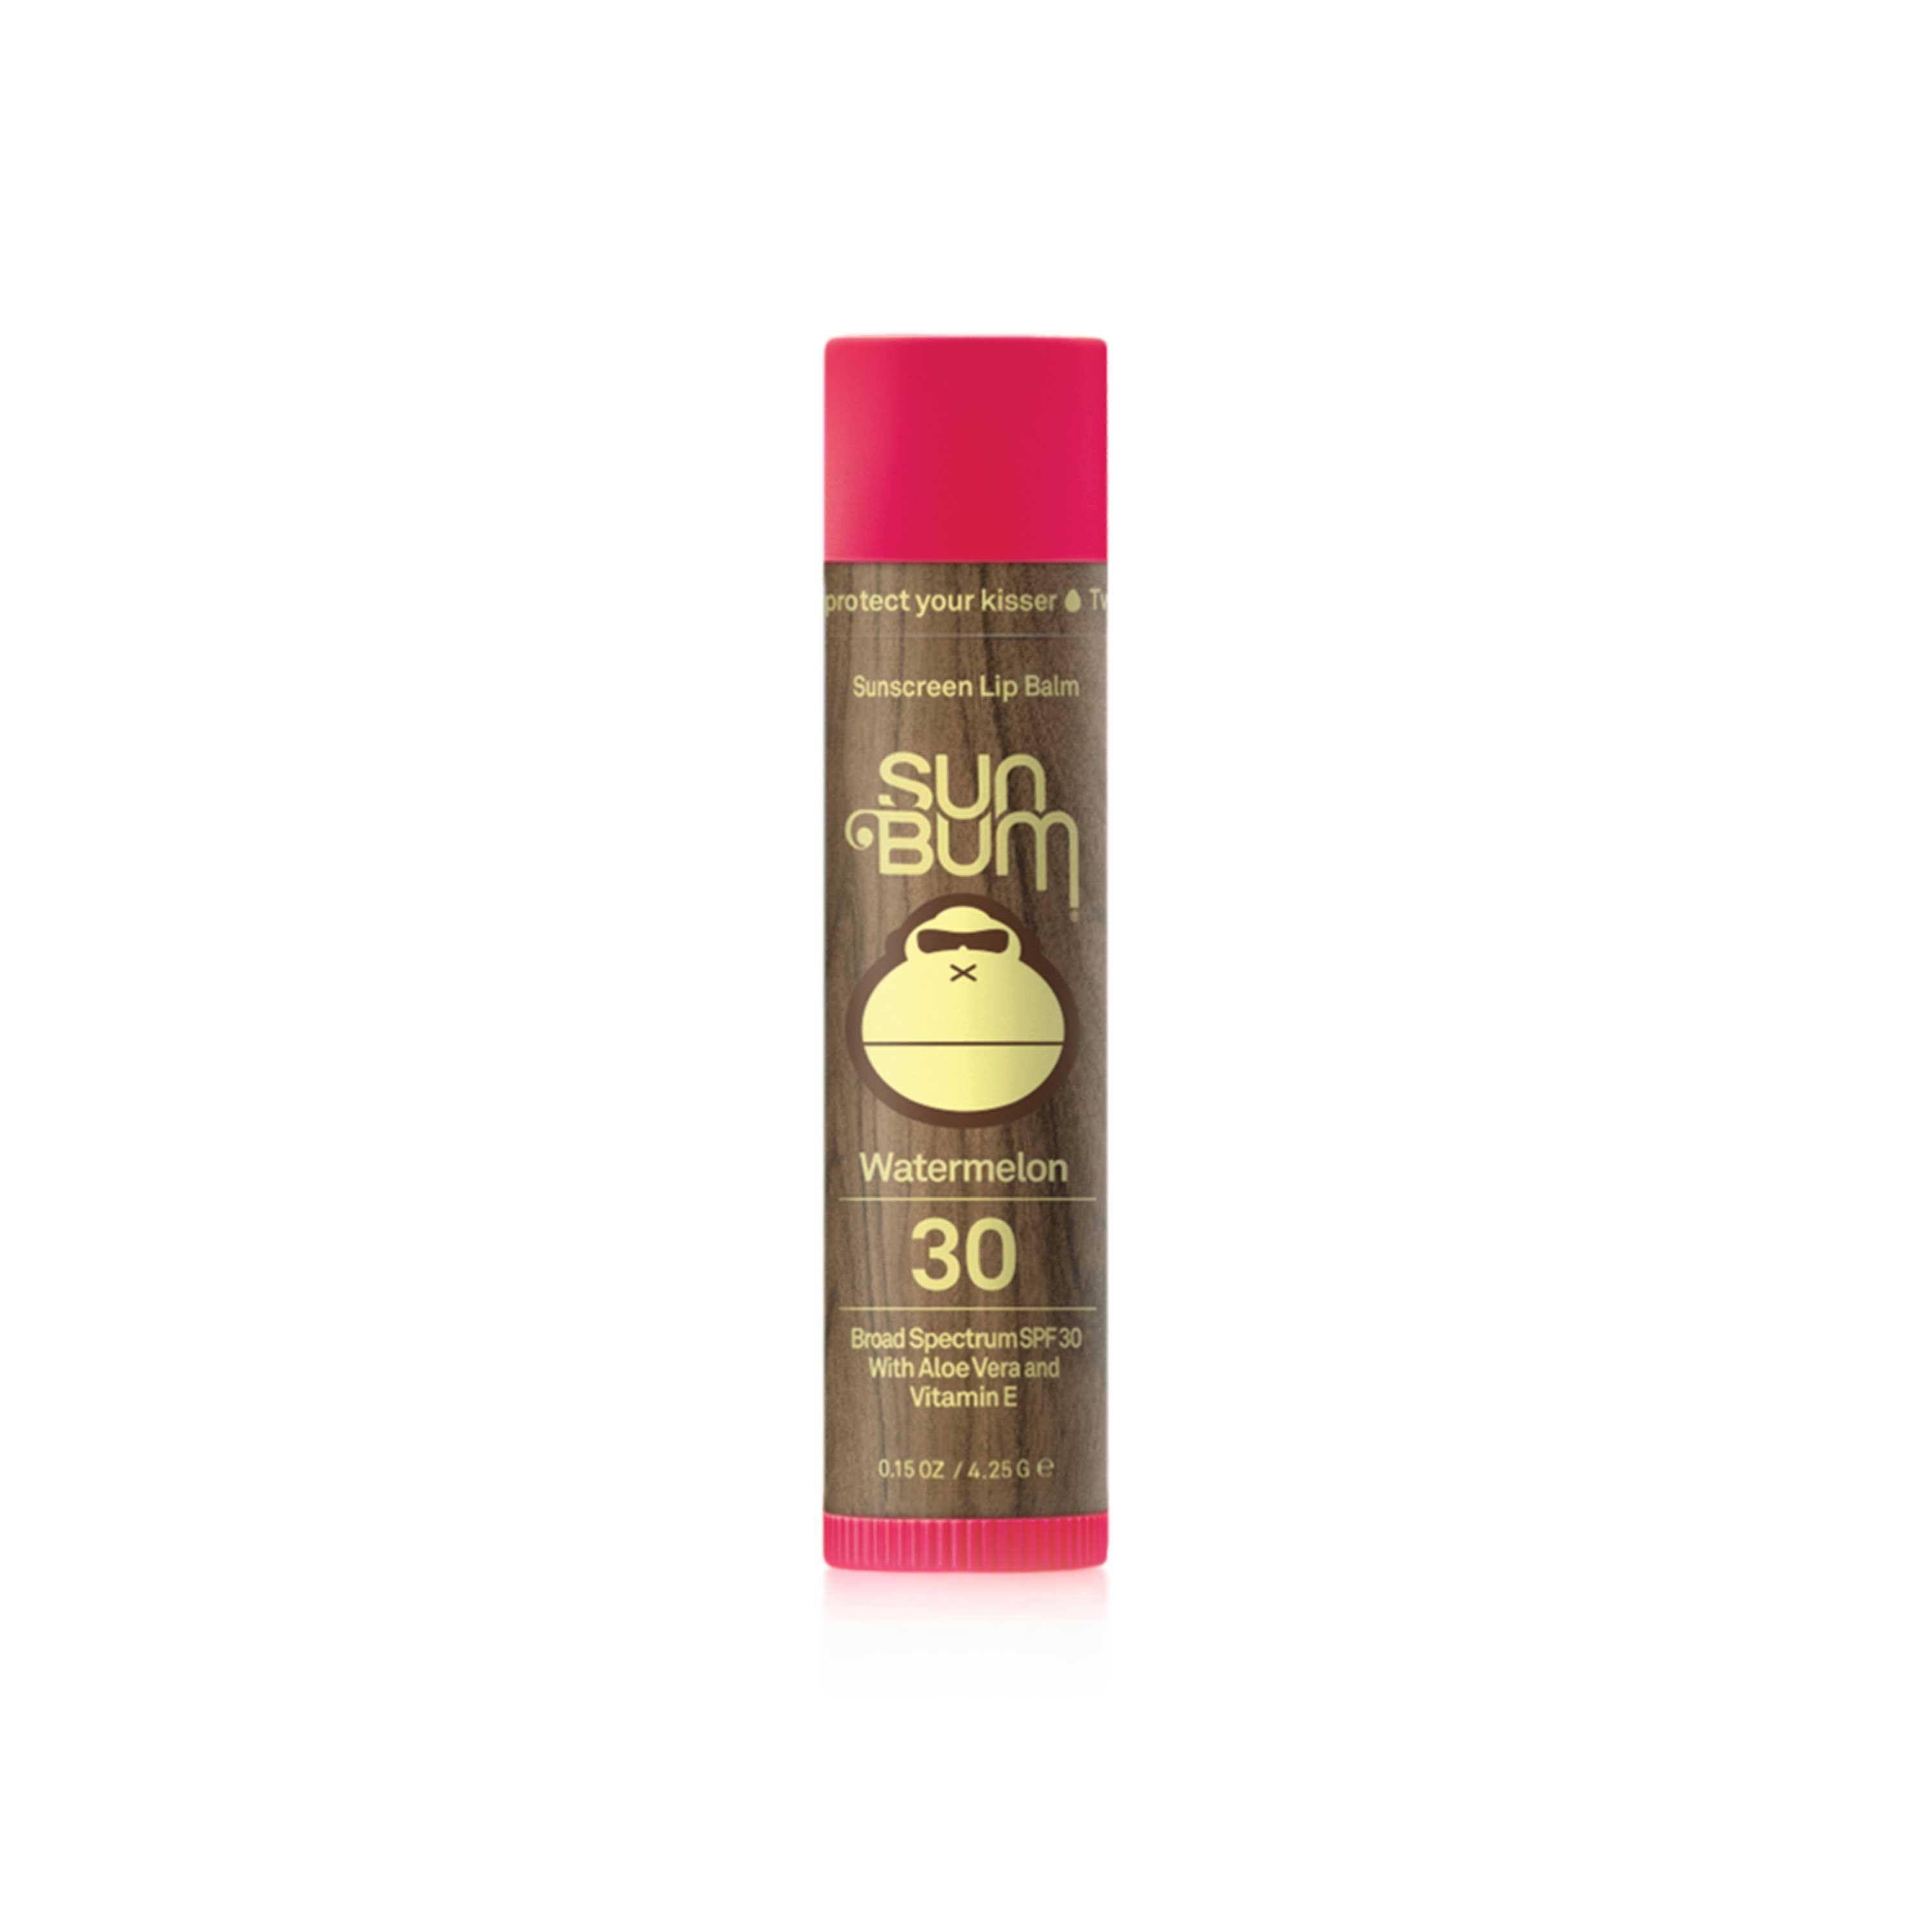 Sun Bum Sunscreen Lip Balm - Coconut, SPF 30, 0.15oz